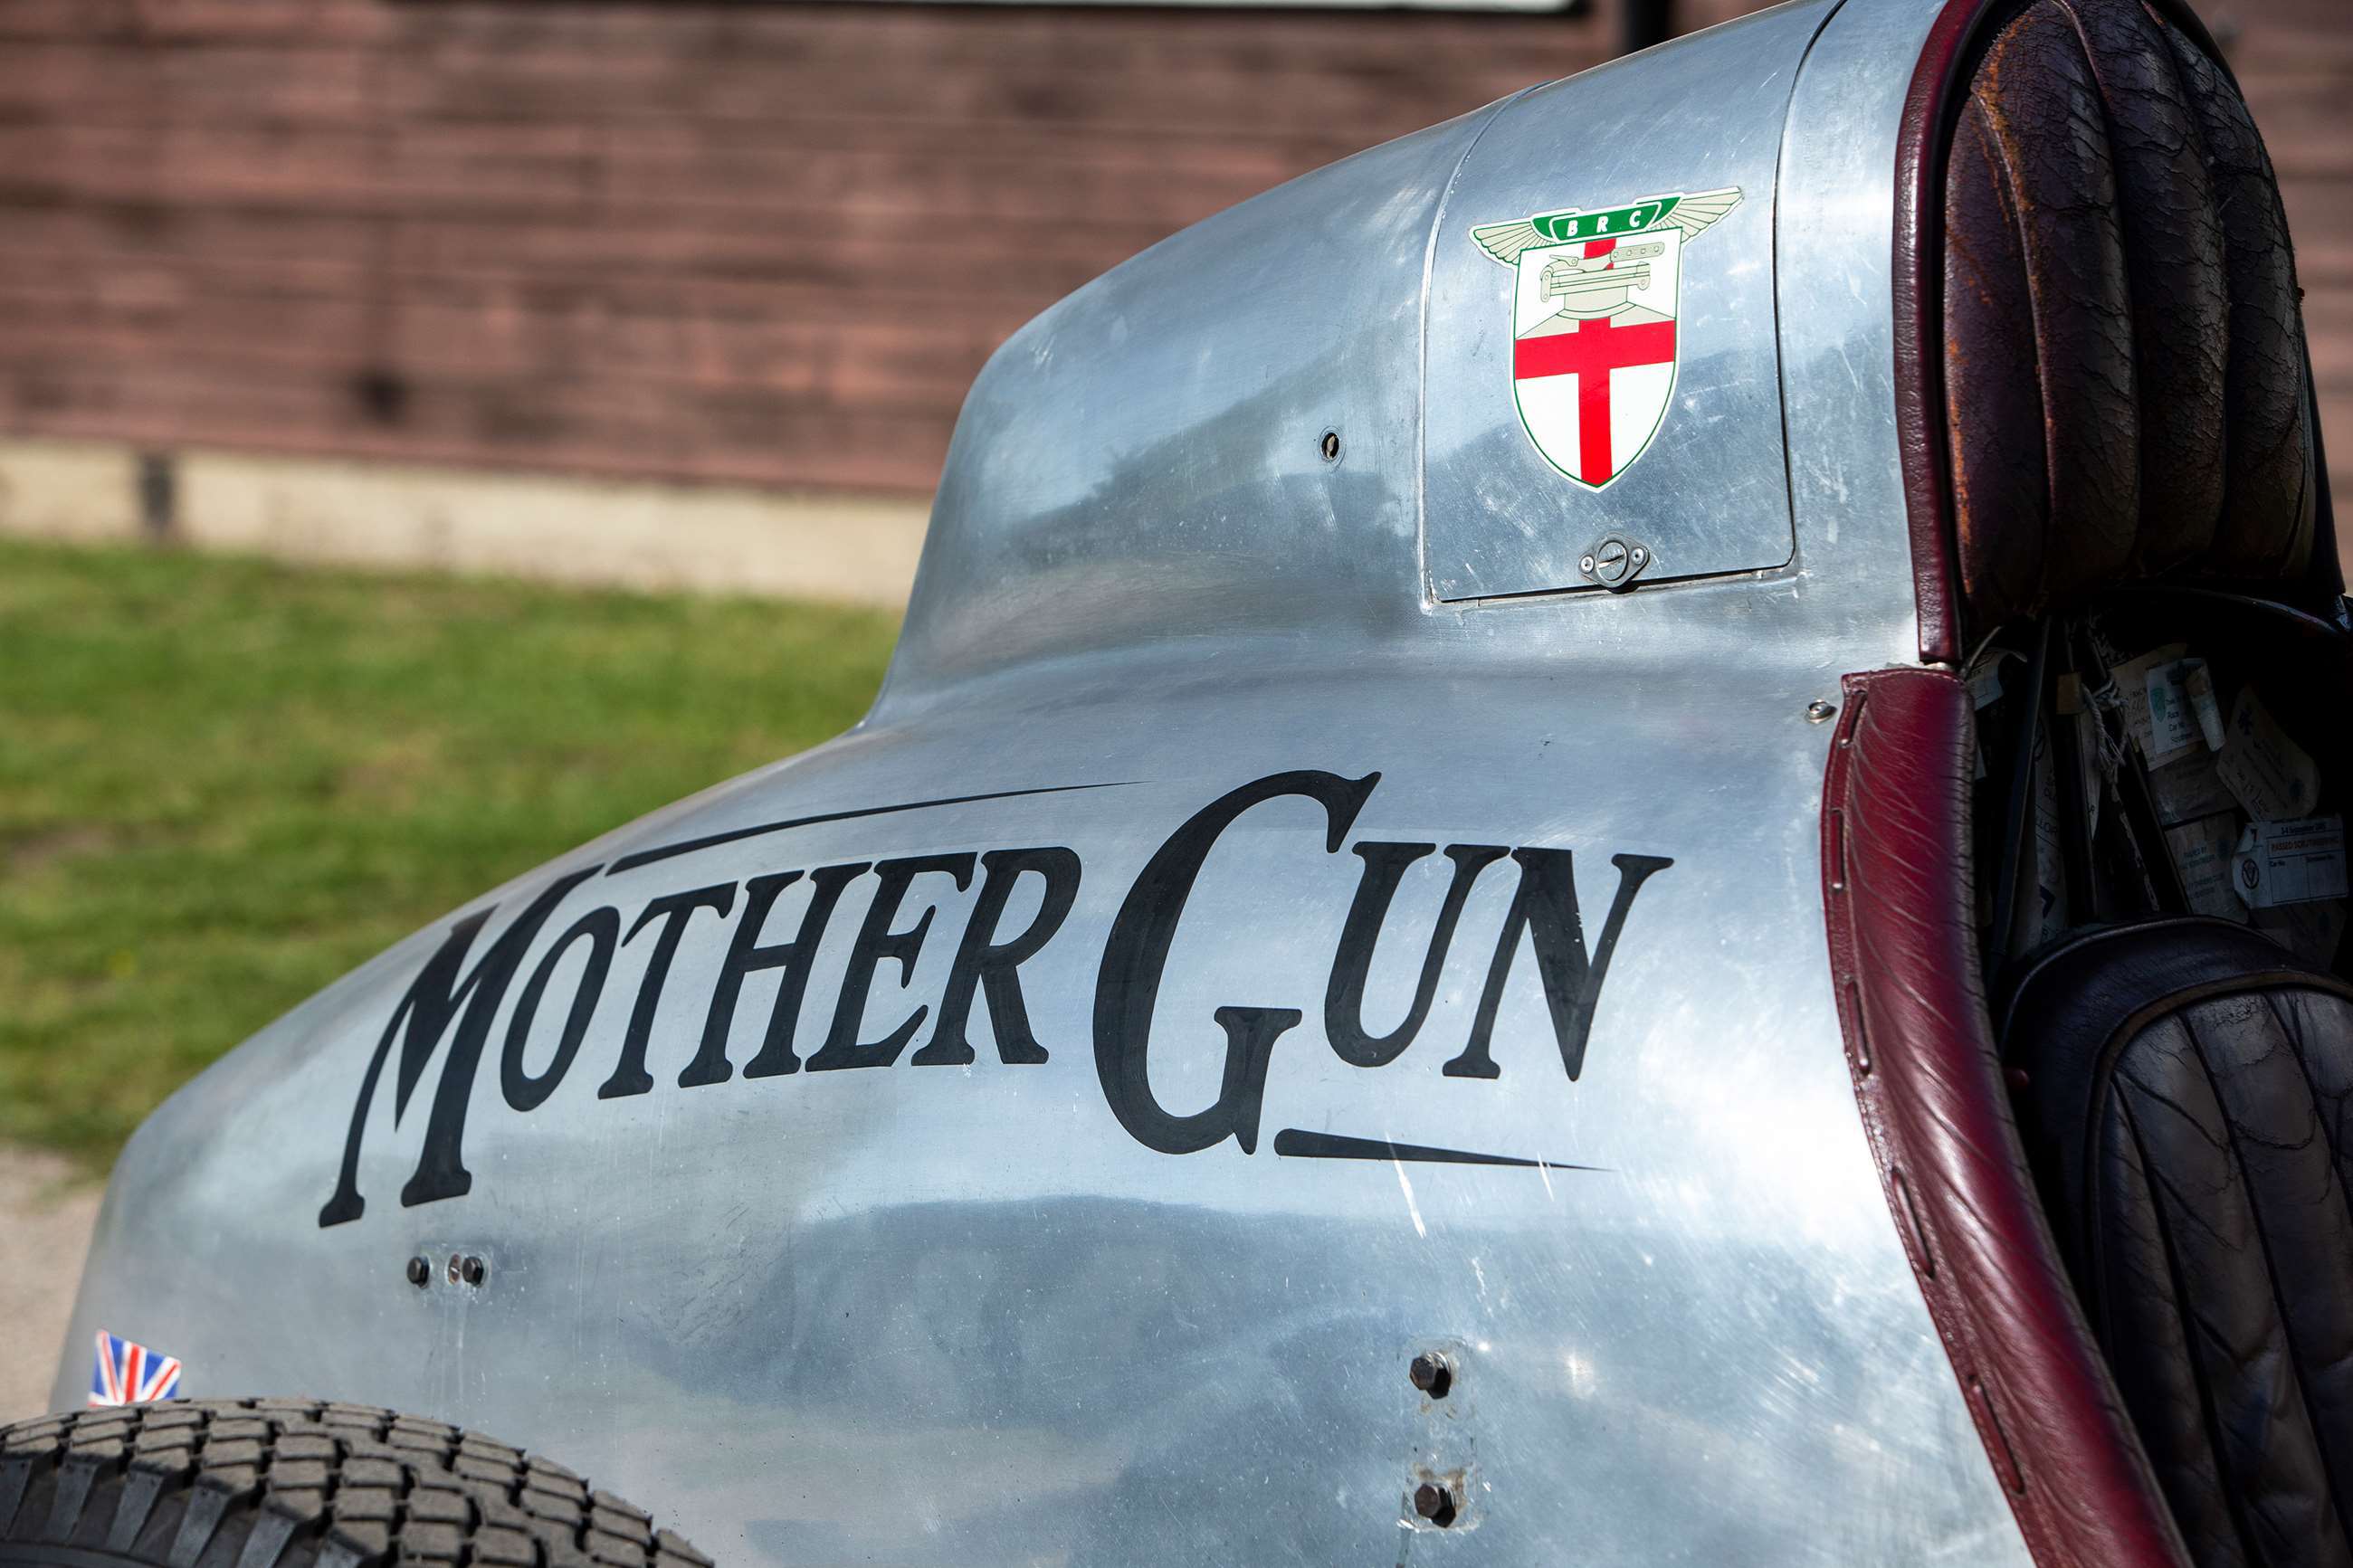 bentley-jackson-special-old-mother-gun-1927-logo-bonhams-fos-andrew-frankel-goodwood-18062019.jpg